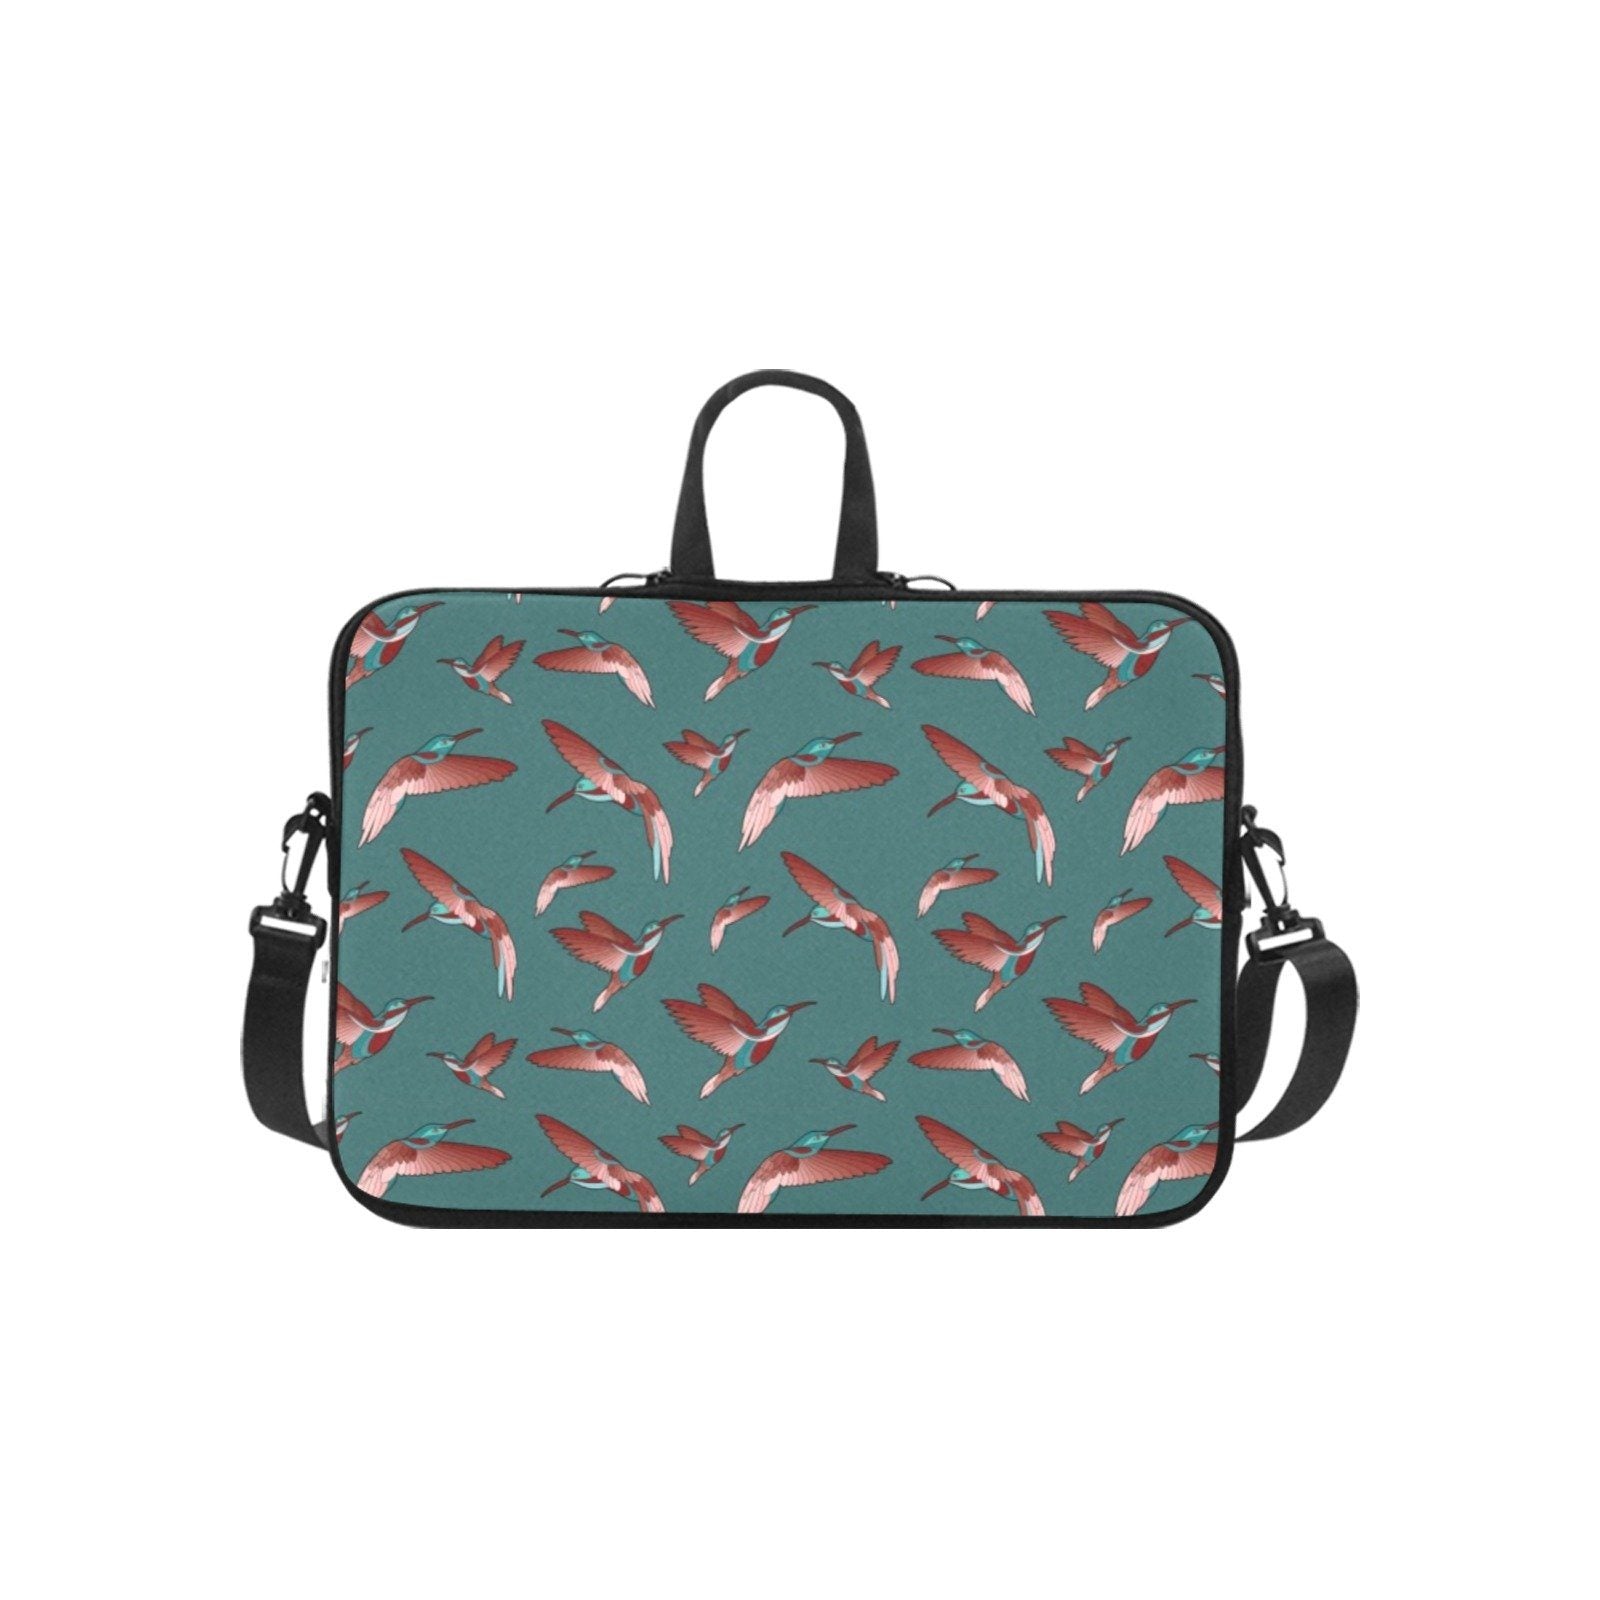 Red Swift Turquoise Laptop Handbags 11" bag e-joyer 